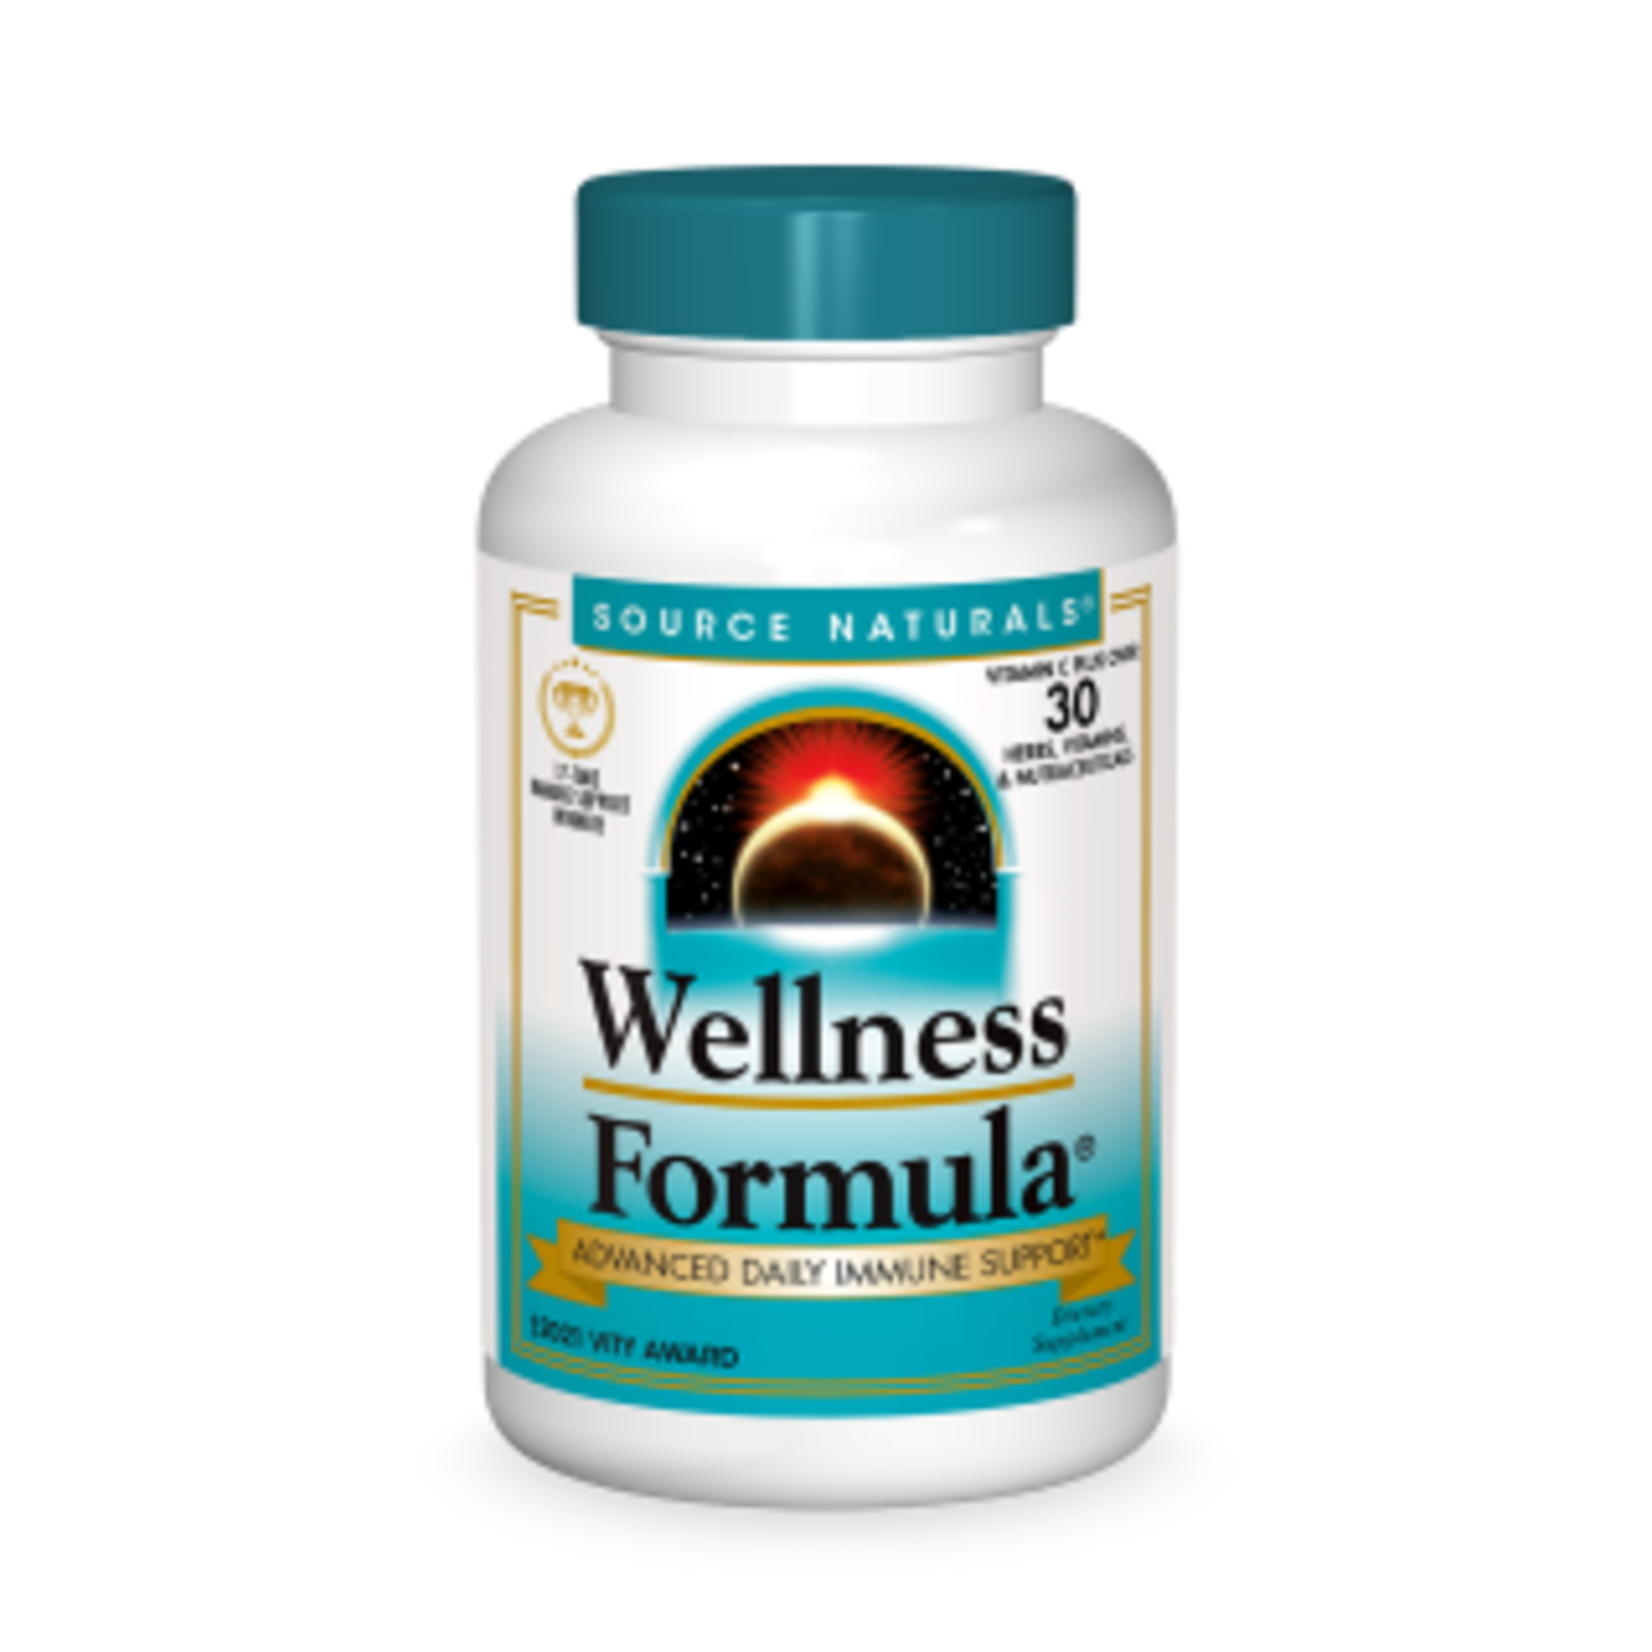 Source Naturals Source Naturals - Wellness Formula - 180 Tablets